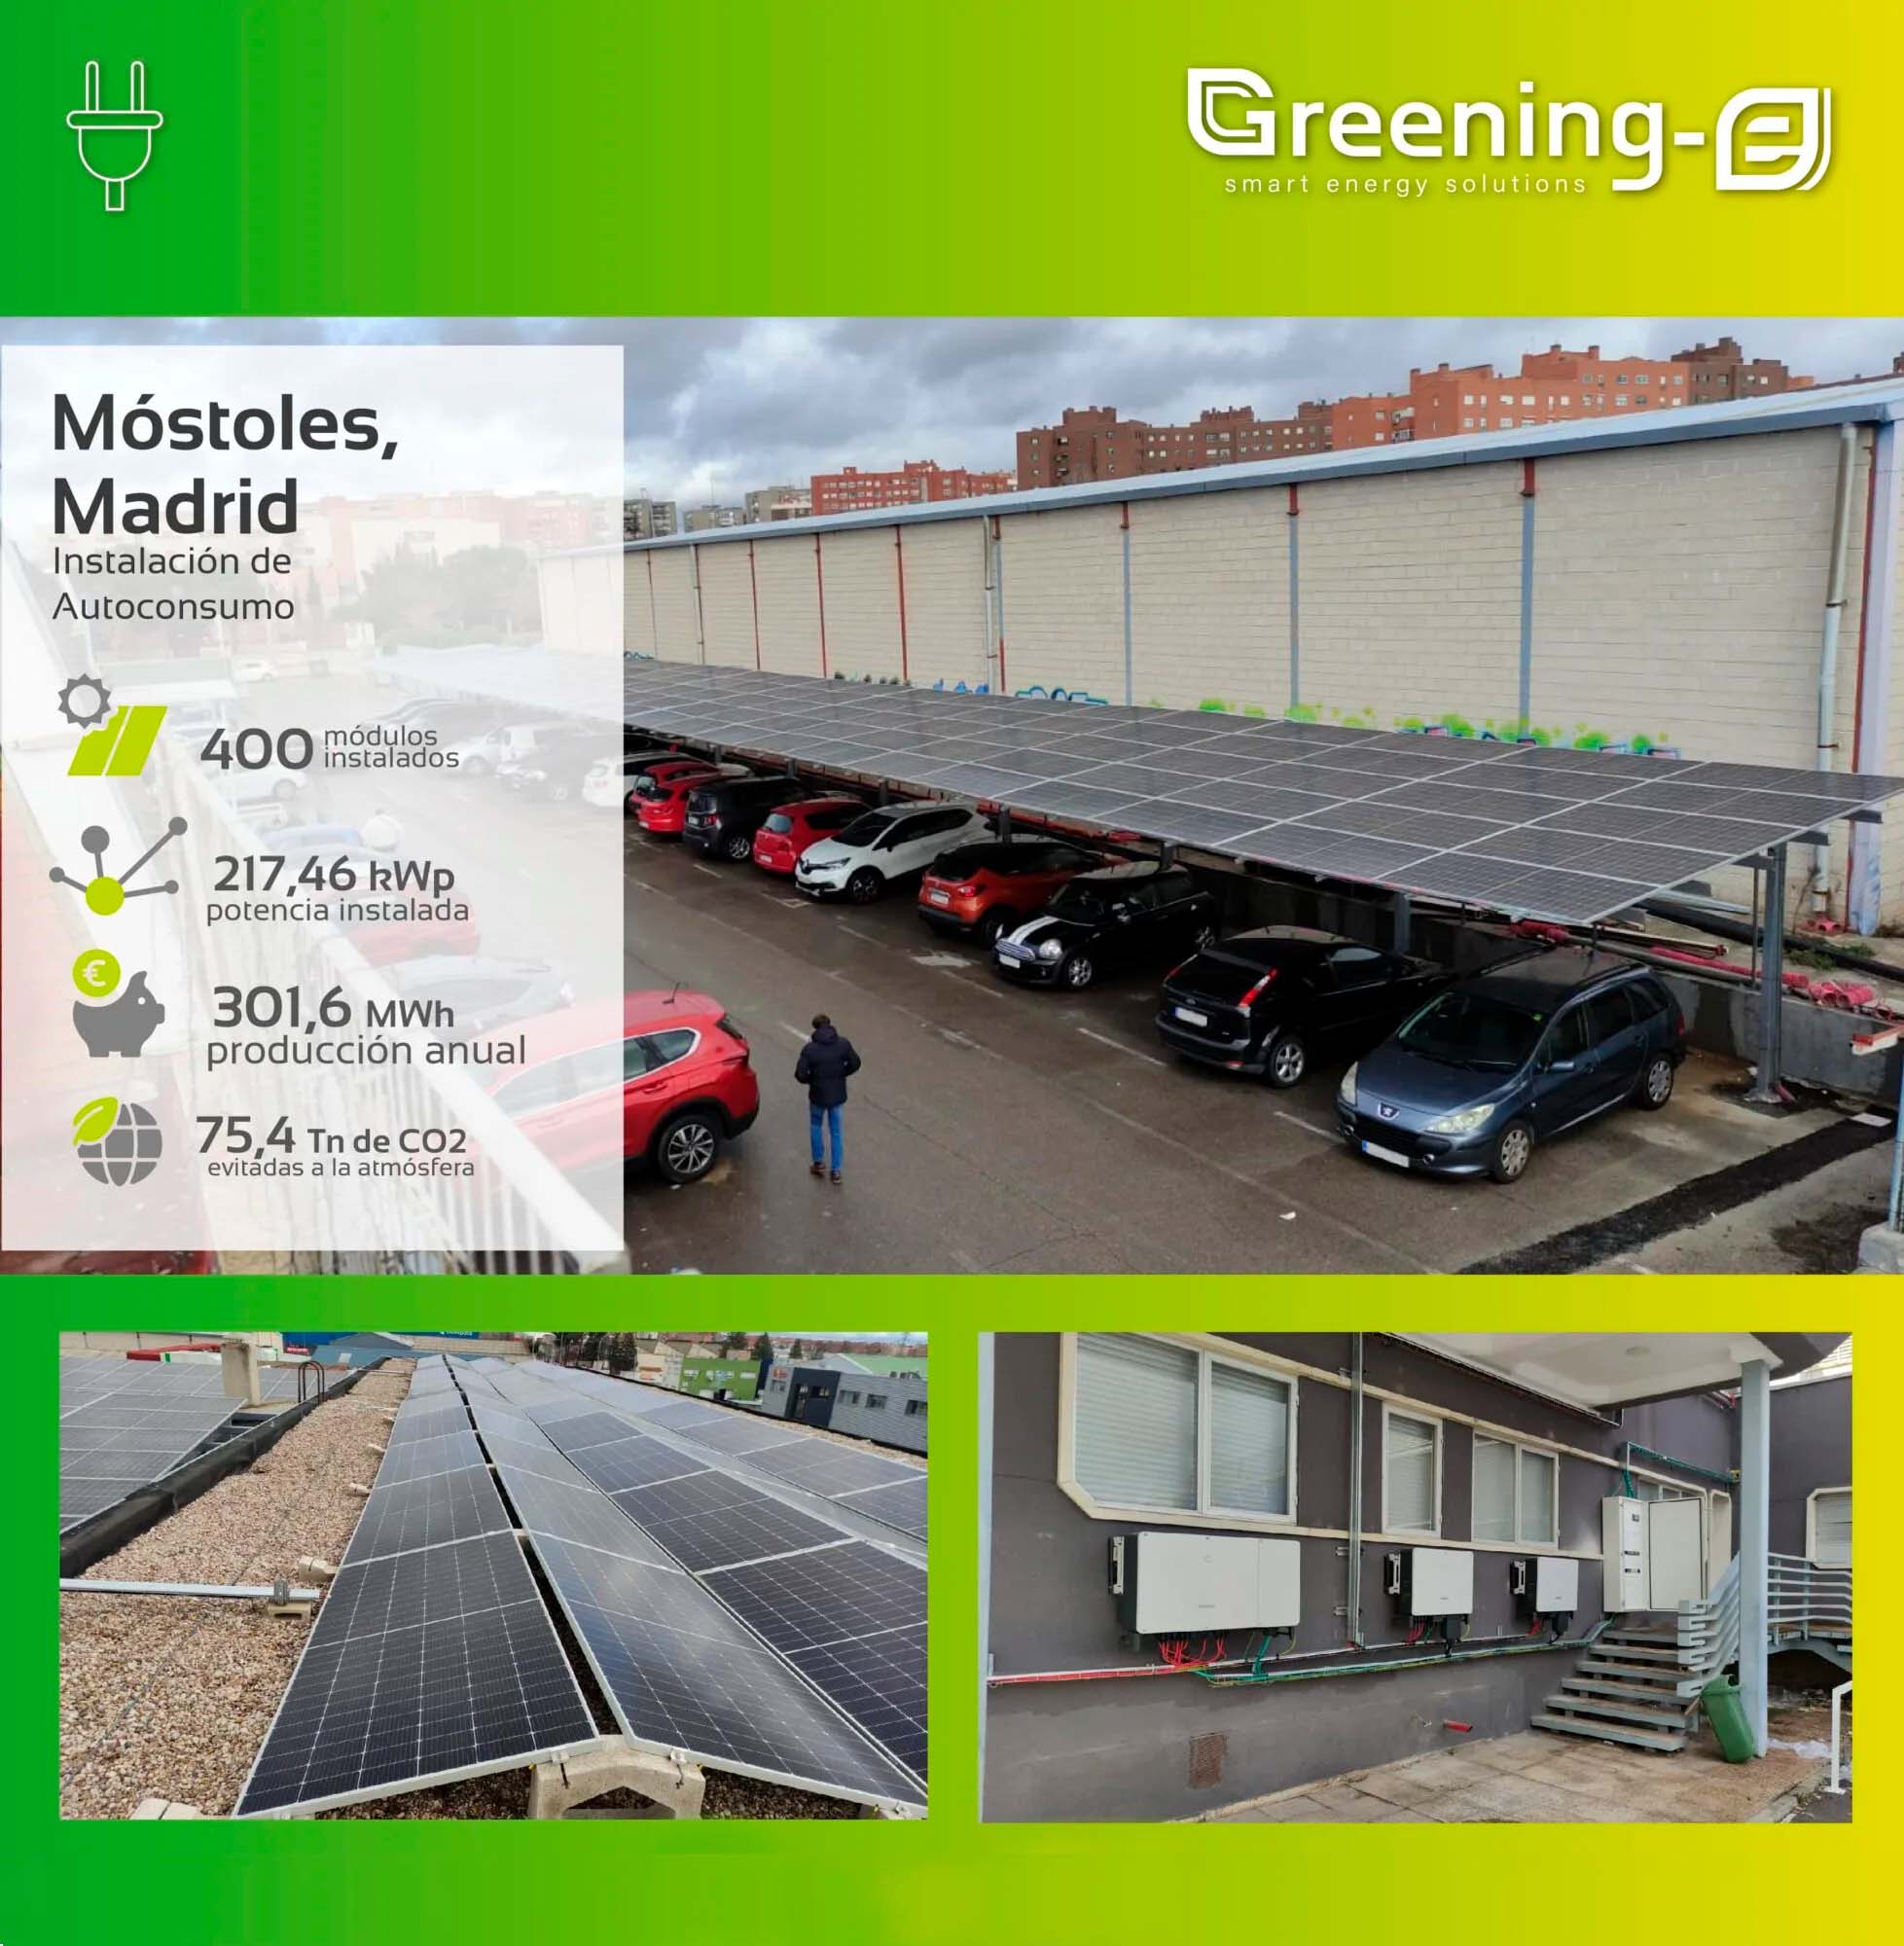 Greening-e